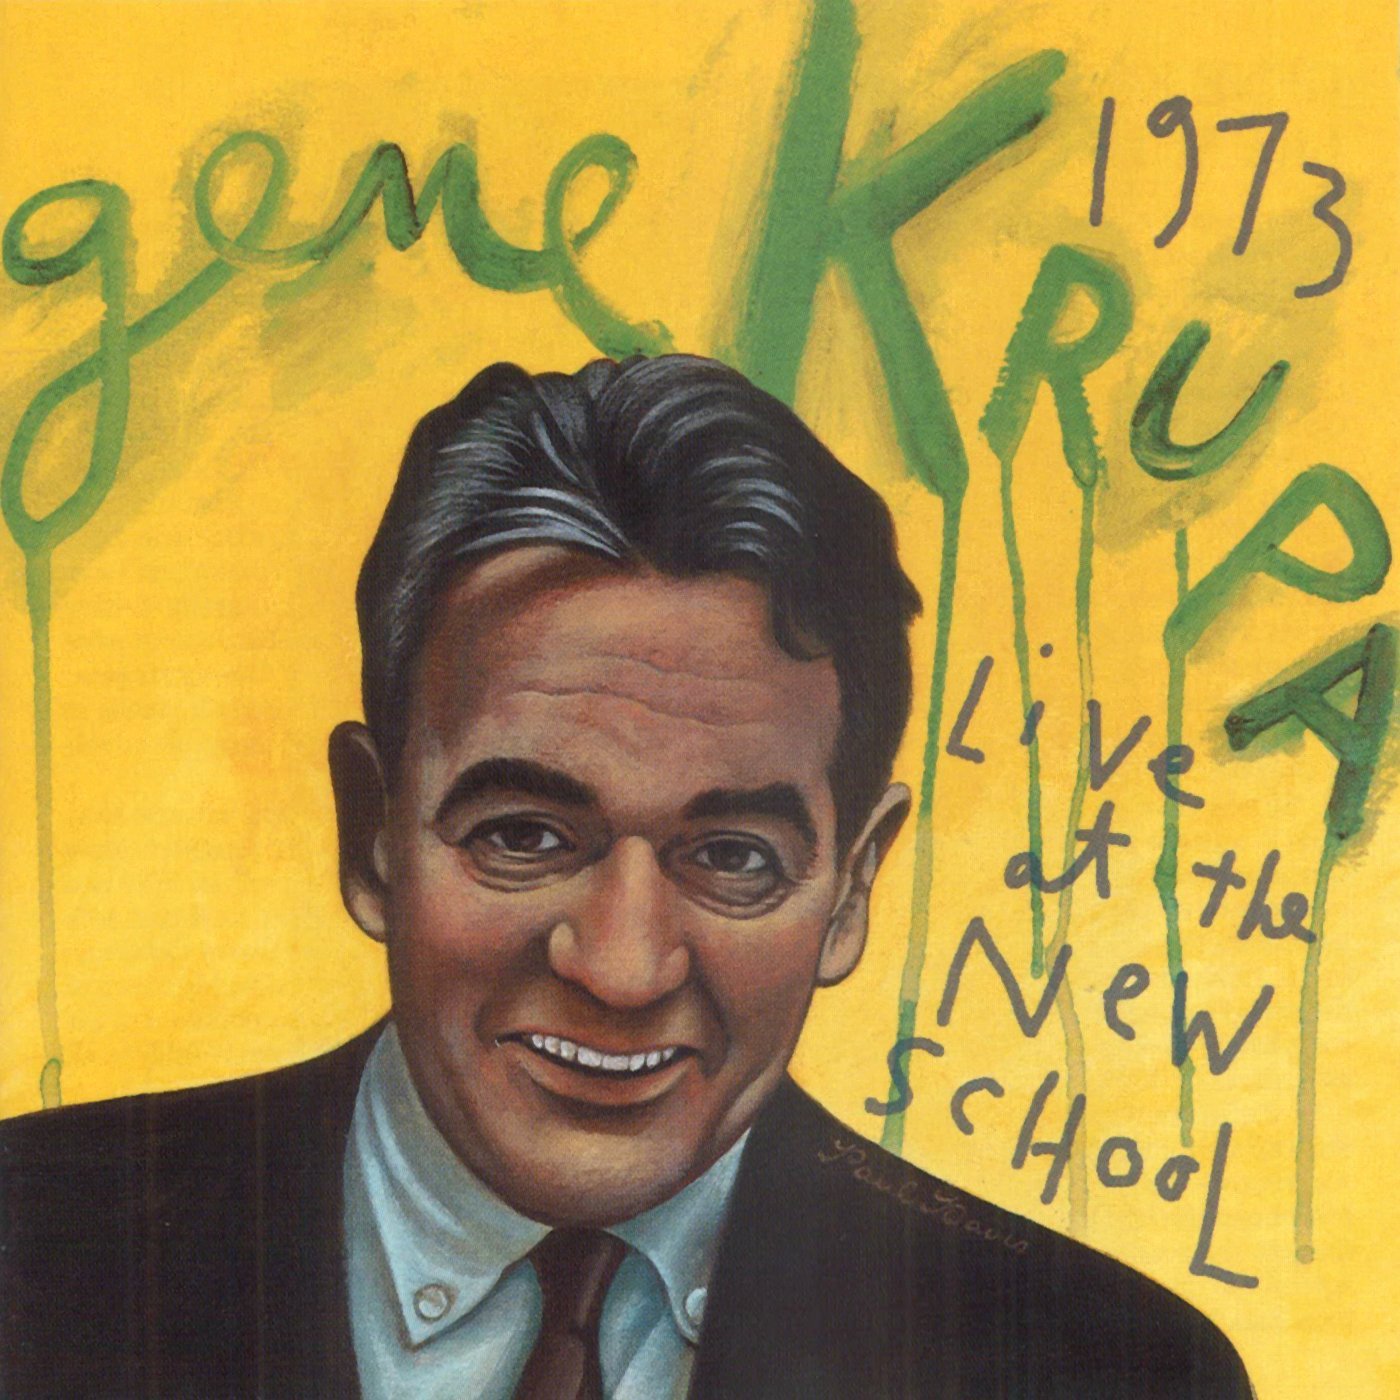 GENE KRUPA - Gene Krupa Live at the New School cover 